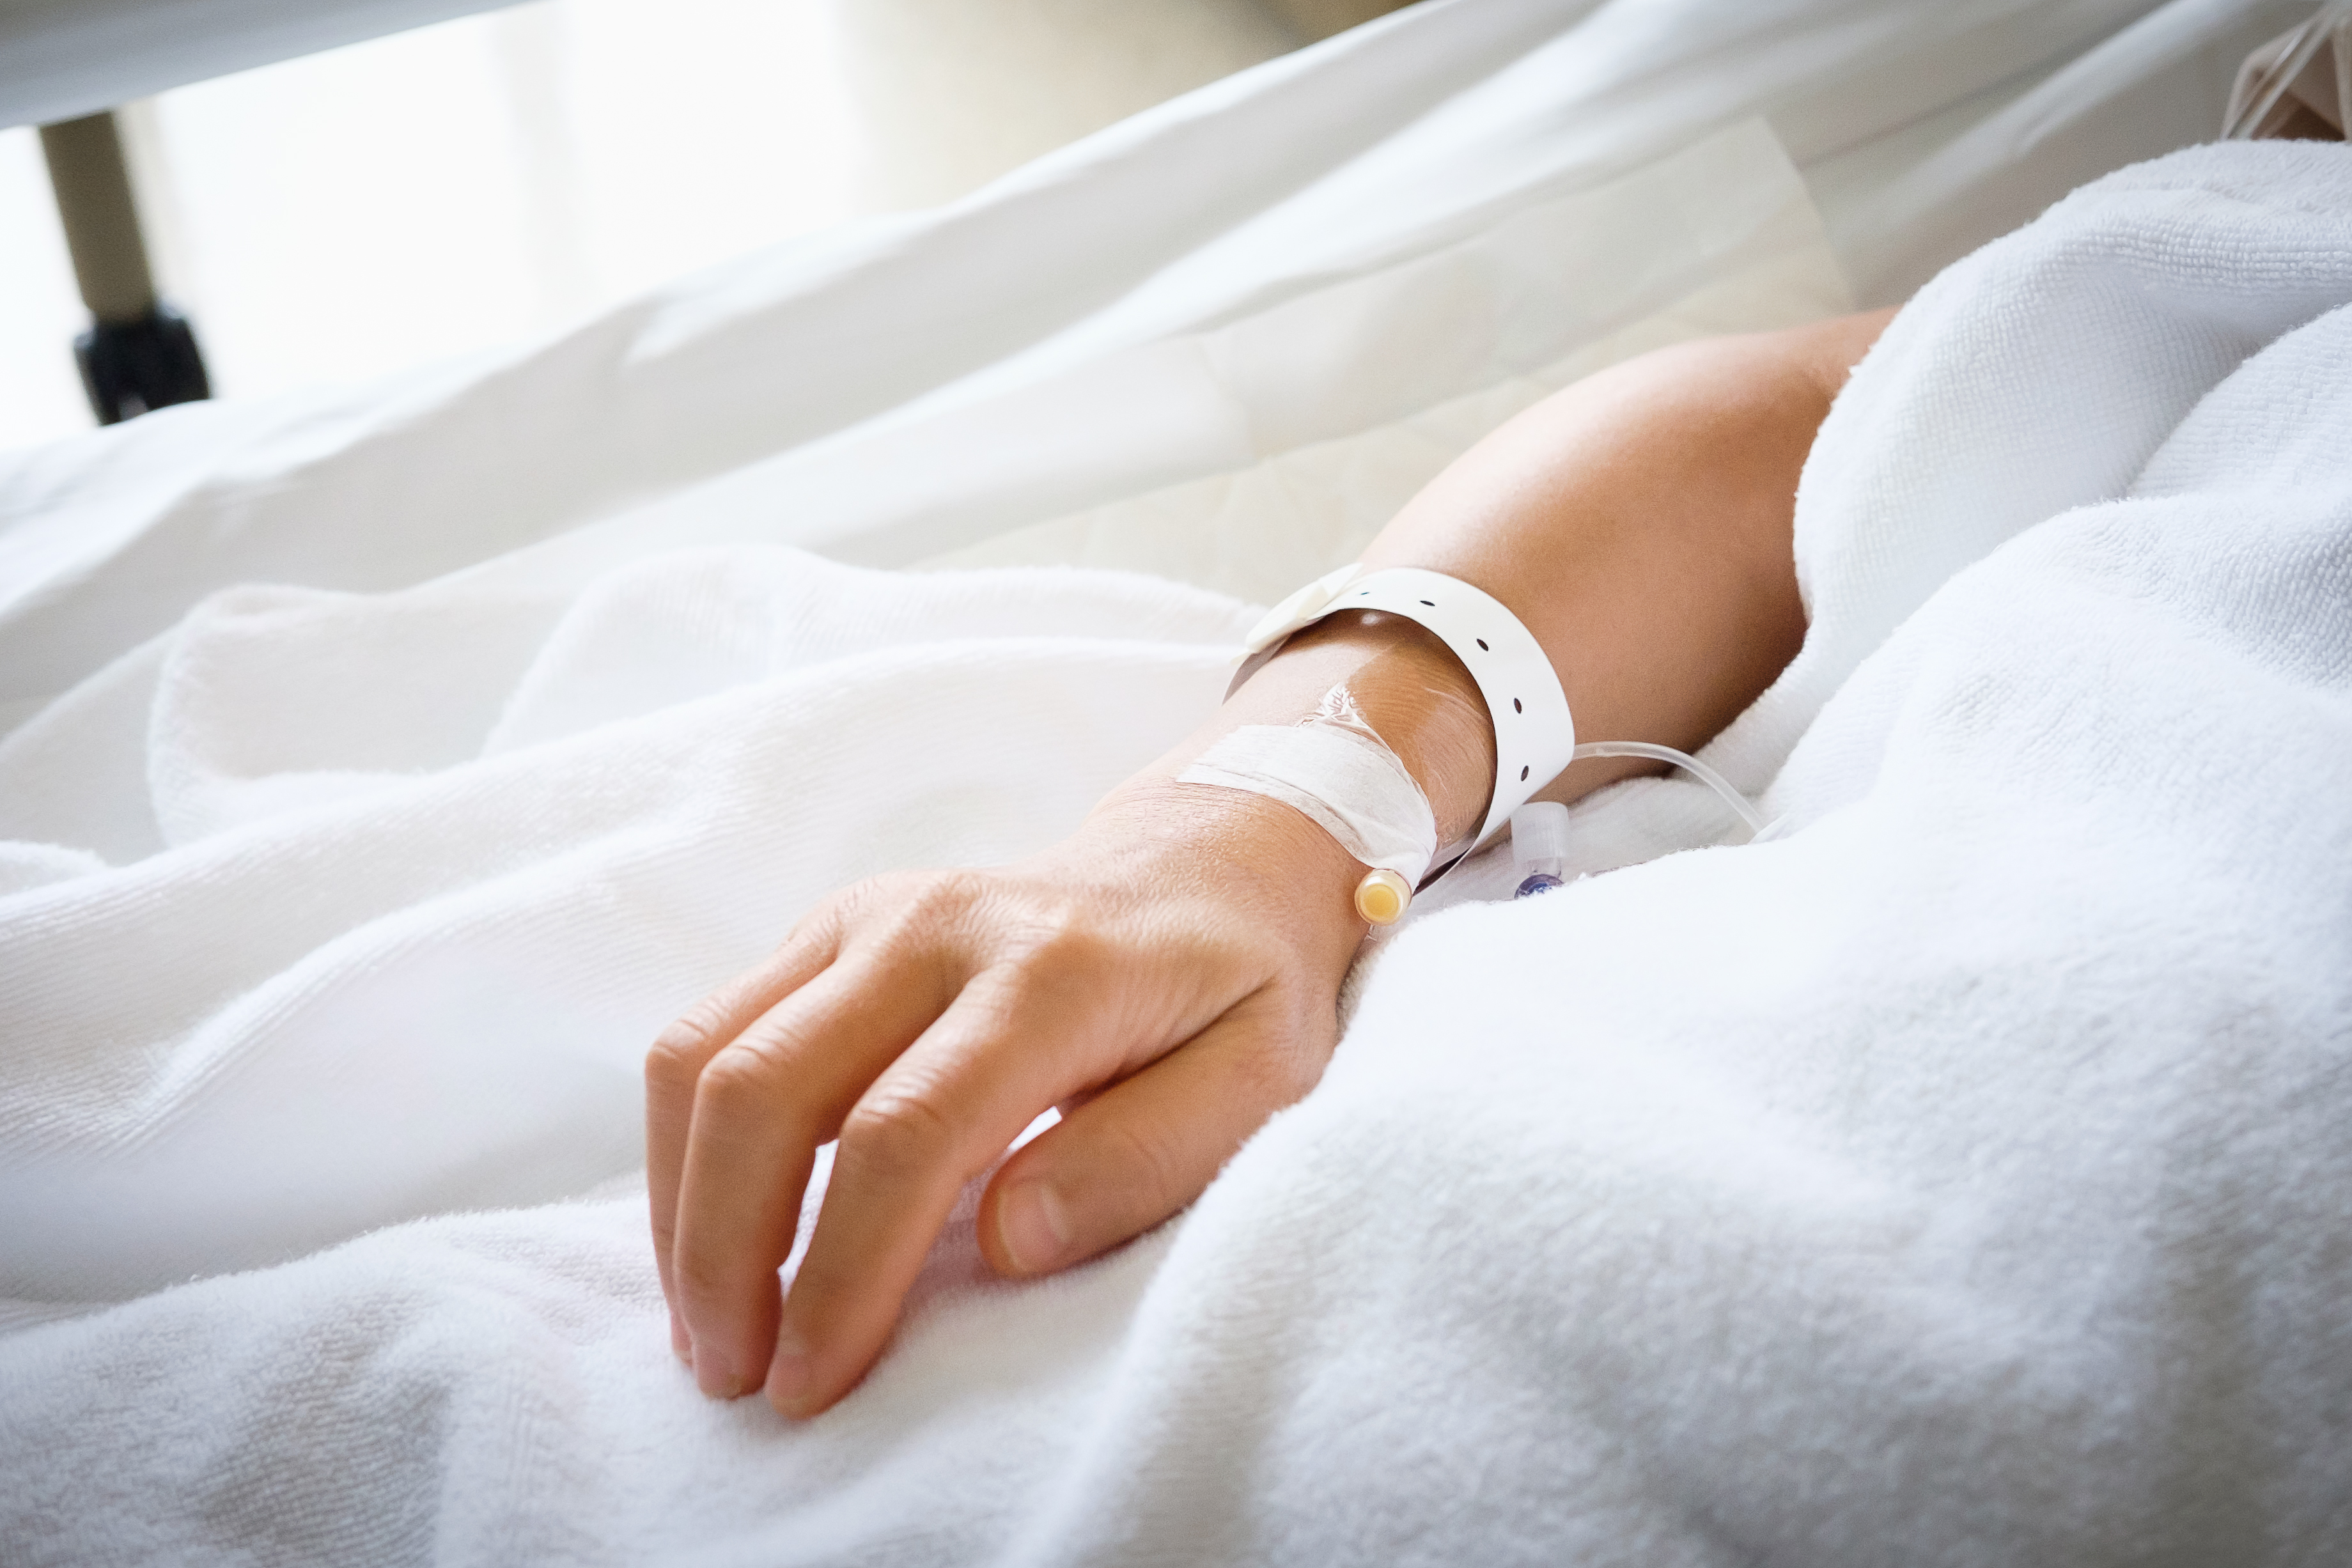 Mão de pessoa no hospital | Fonte: Shutterstock